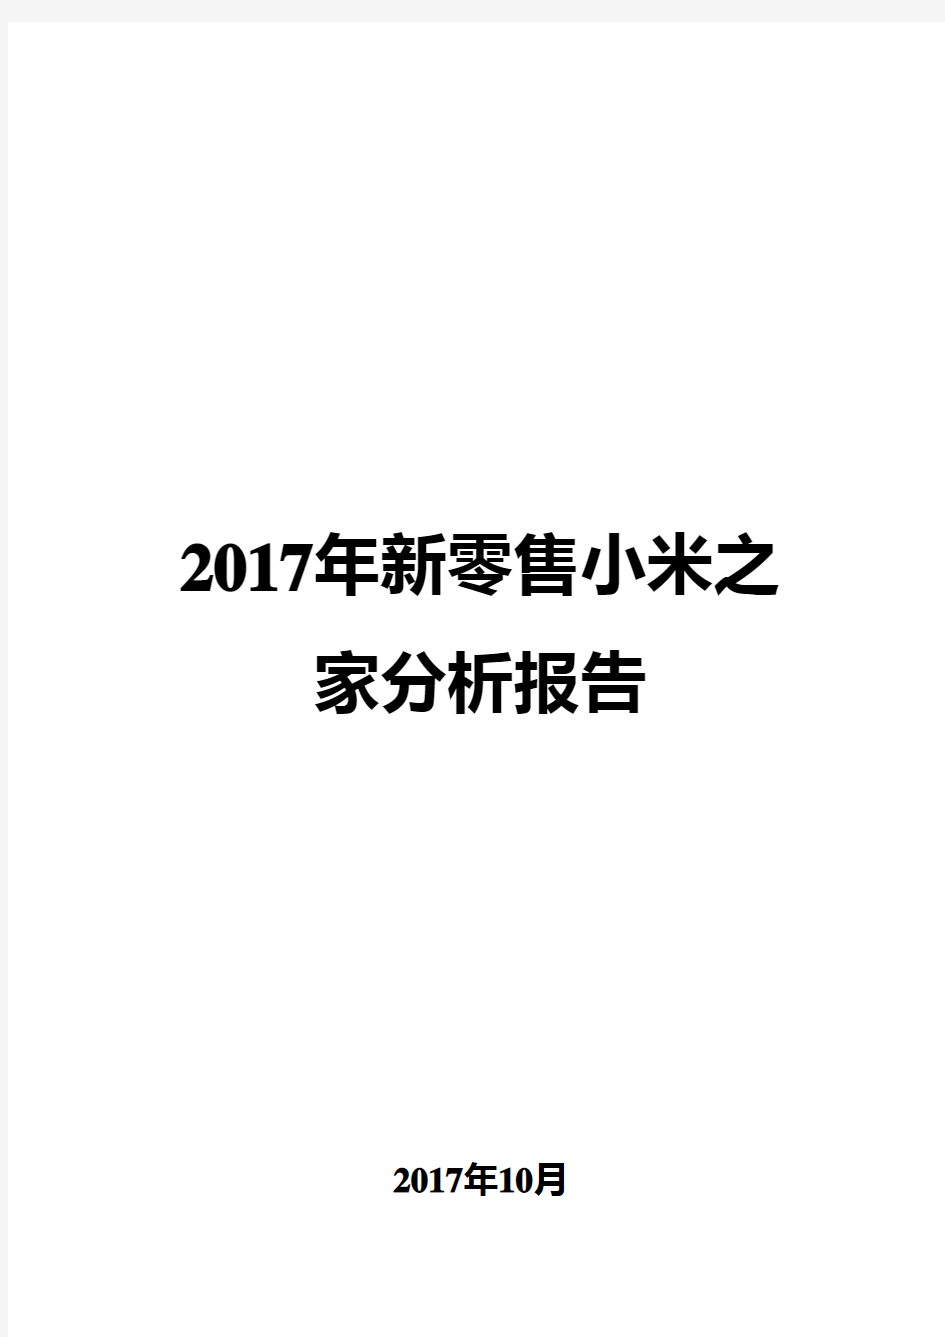 2017年新零售小米之家分析报告